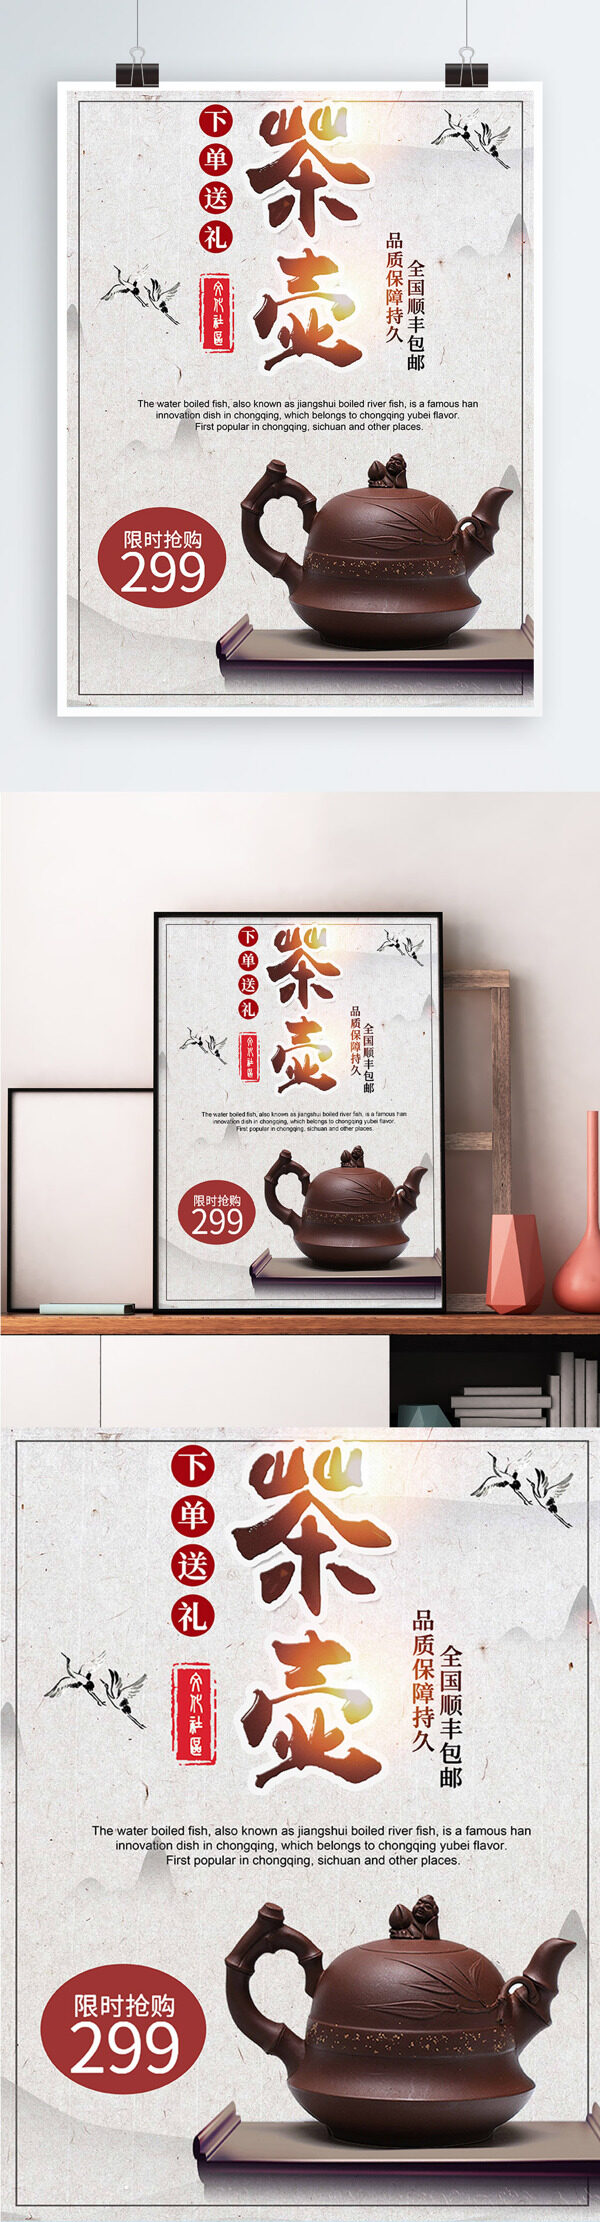 白色背景简约中国风茶壶促销宣传海报